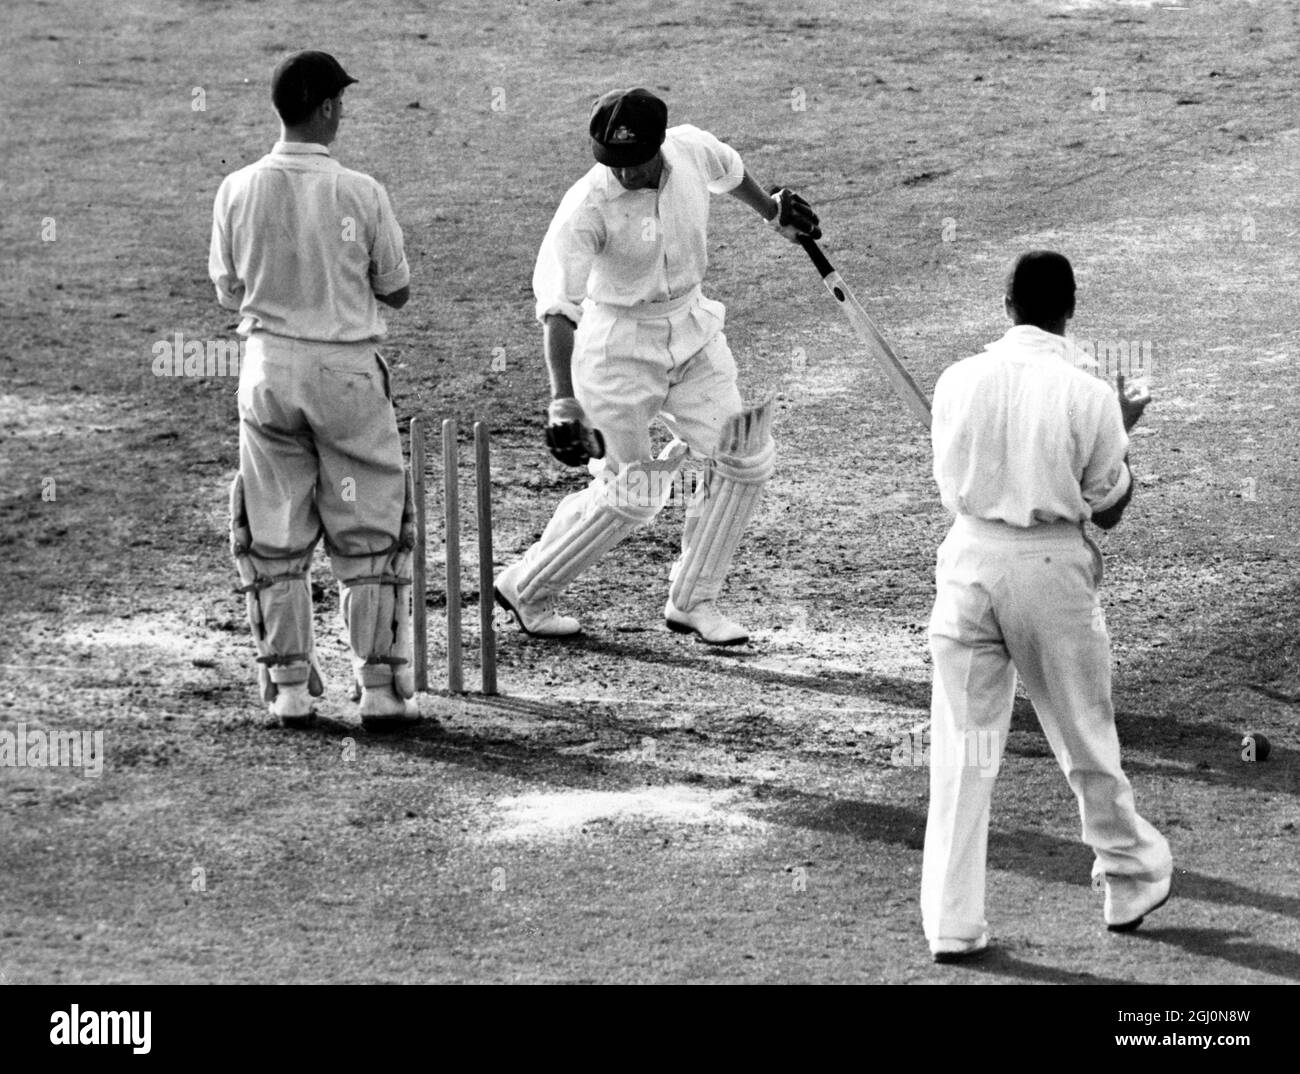 Don Bradman wird von Eric Hollies in seinen letzten Testeinnitzen auf eine Ente geduckt. Er brauchte nur 4 Läufe, um seine Karriere mit durchschnittlich 100 im Test-Cricket zu beenden. Kennington Oval, London, England 14. August 1948 ©Topham - TopFoto Stockfoto